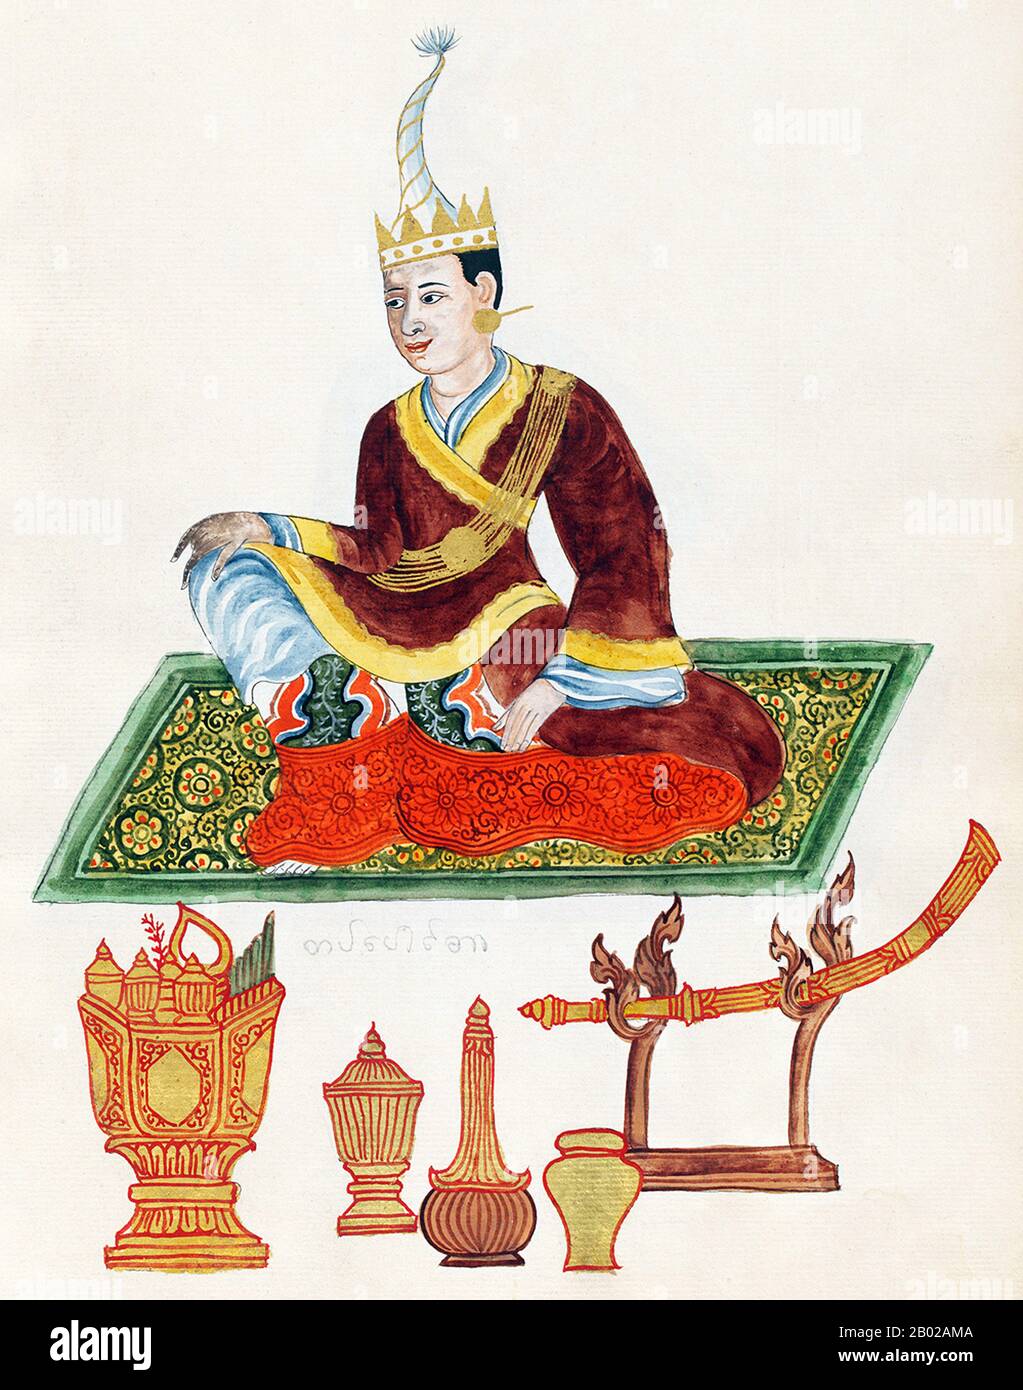 La dynastie Konbaung fut la dernière dynastie qui dirigeait la Birmanie (Myanmar) de 1752 à 1885. La dynastie a créé le deuxième plus grand empire de l'histoire birmane, et a poursuivi les réformes administratives entamées par la dynastie Toungoo, jetant les bases de l'état moderne de Birmanie. Les réformes se sont avérées insuffisantes pour endiguer l'avance des Britanniques, qui ont vaincu les Birmans dans les trois guerres anglo-birmanes sur une période de six ans (1824–1885) et ont mis fin à la monarchie birmane vieille du millénaire en 1885. Banque D'Images